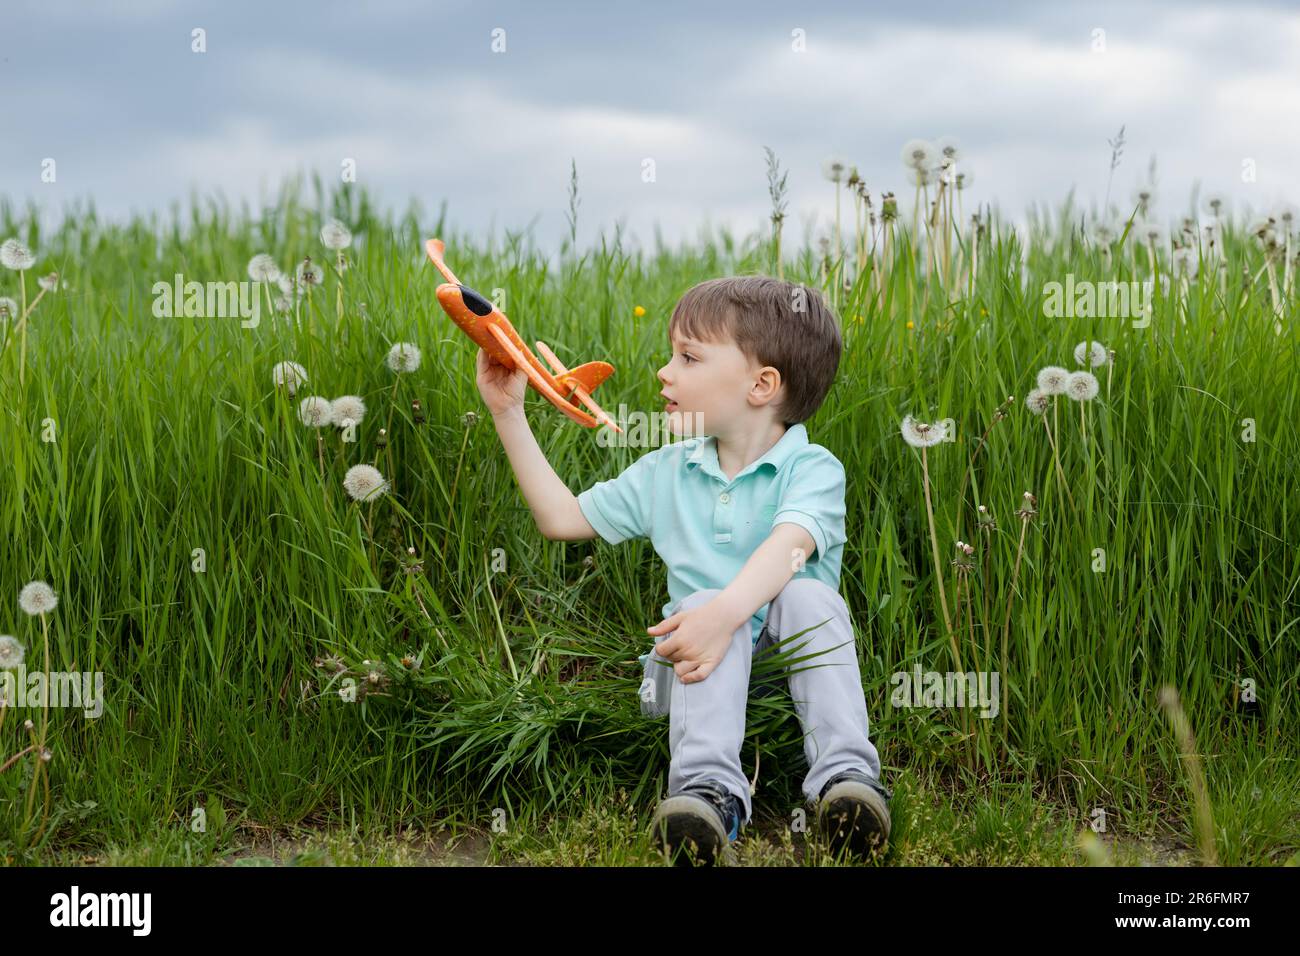 un bambino sogna di diventare un pilota e gioca con un aereo arancione Foto Stock